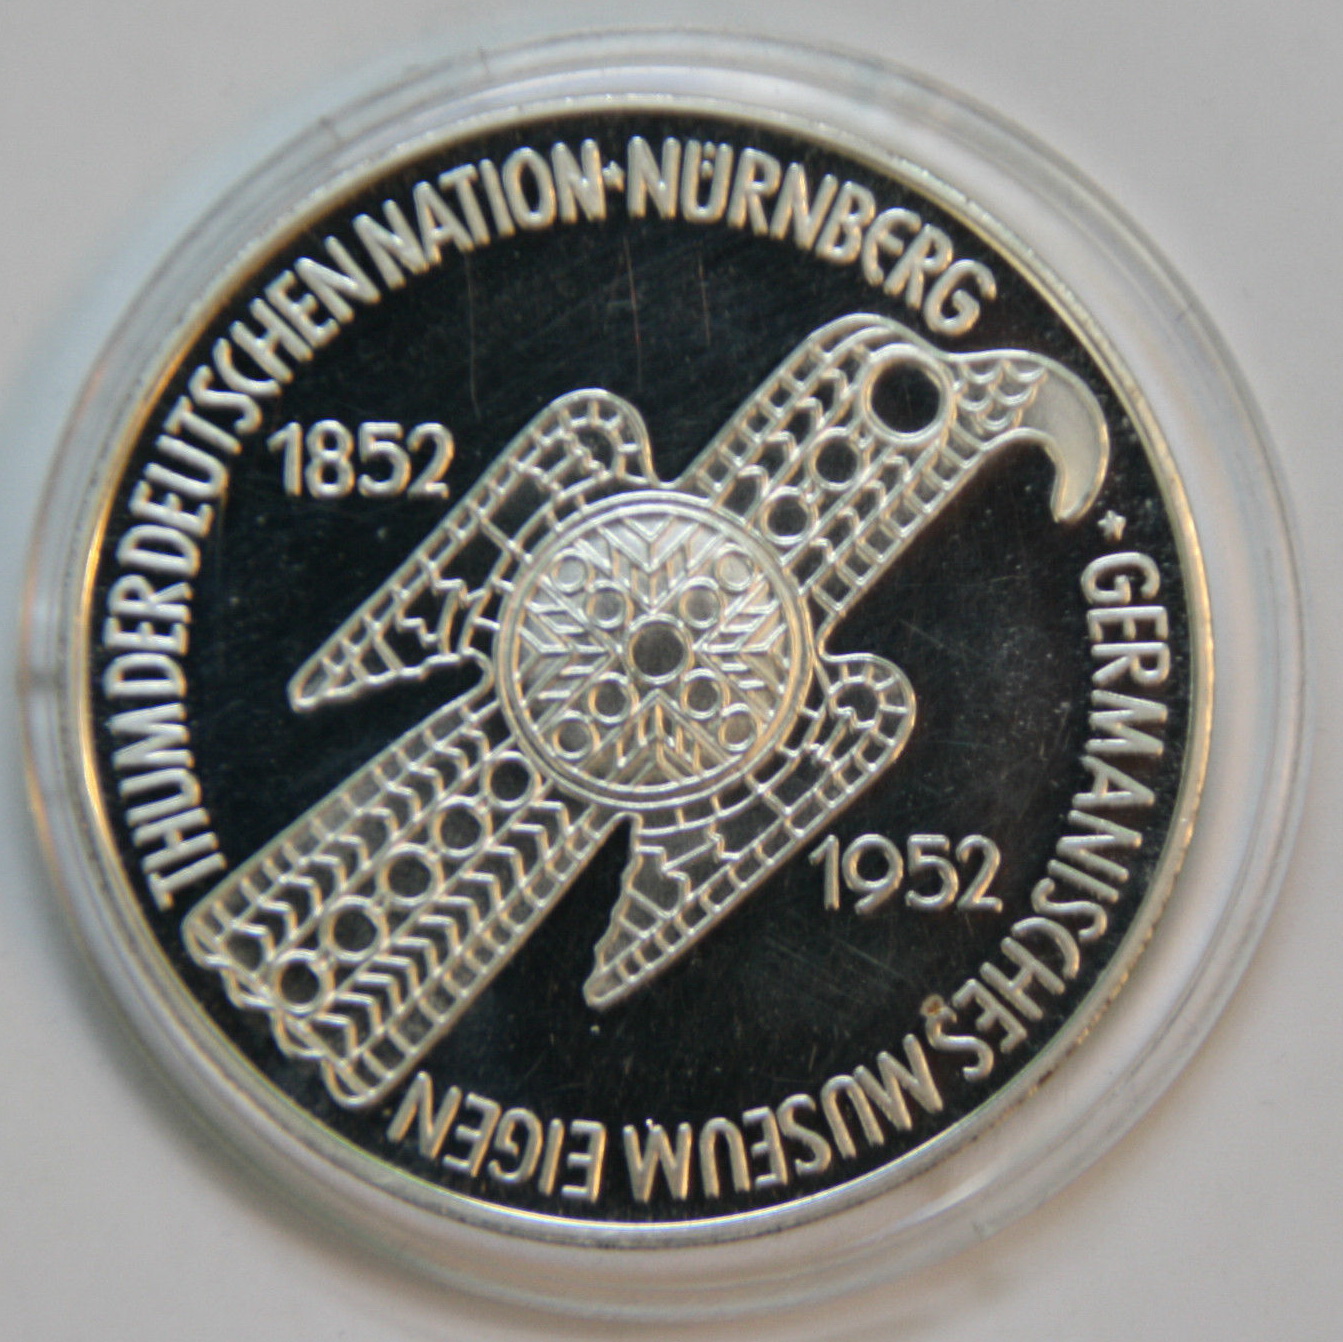 Germanisches Museum Medaille in Polierter Platte ist kein Original